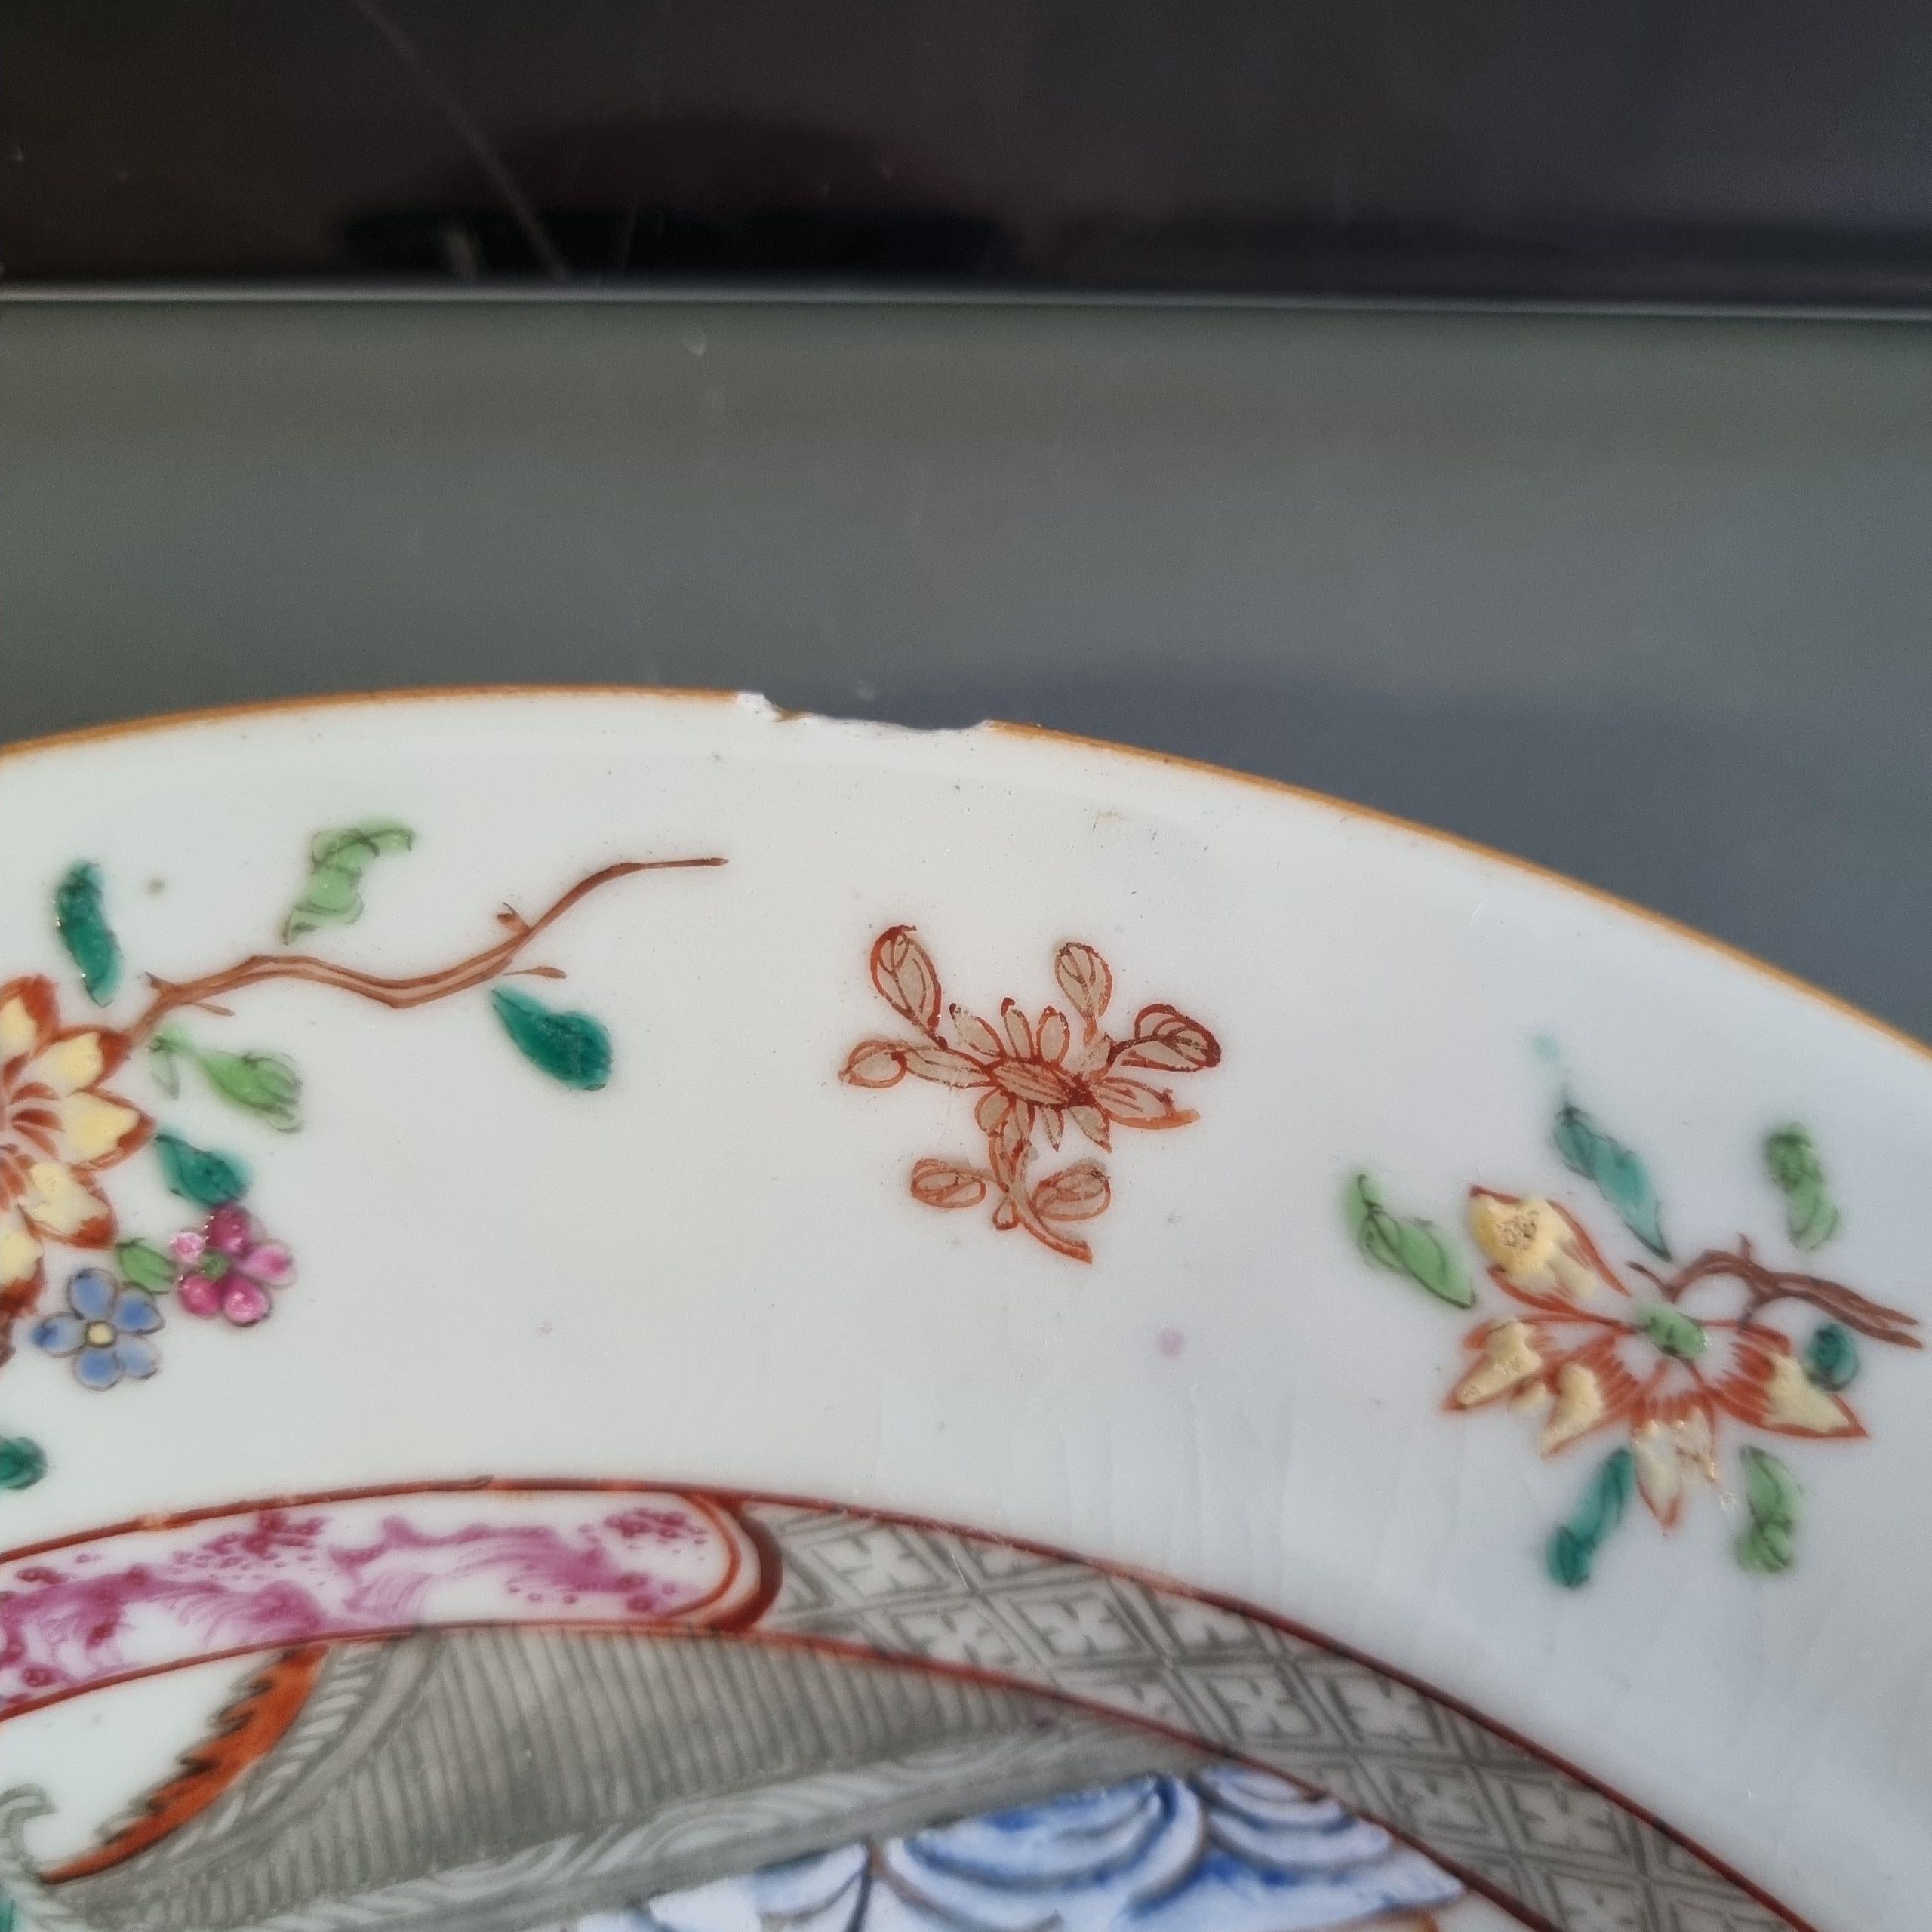 
Ich zeige Ihnen diese schöne Schale aus dem 18. Jahrhundert, der Yongzheng- oder frühen Qianlong-Zeit. Ungewöhnliche Dekoration.
Ich recherchiere noch über die Szene.

Bedingung
1 Frittenfleck am Rand und minimale Fleebisse am Rand. Größe 226x27mm